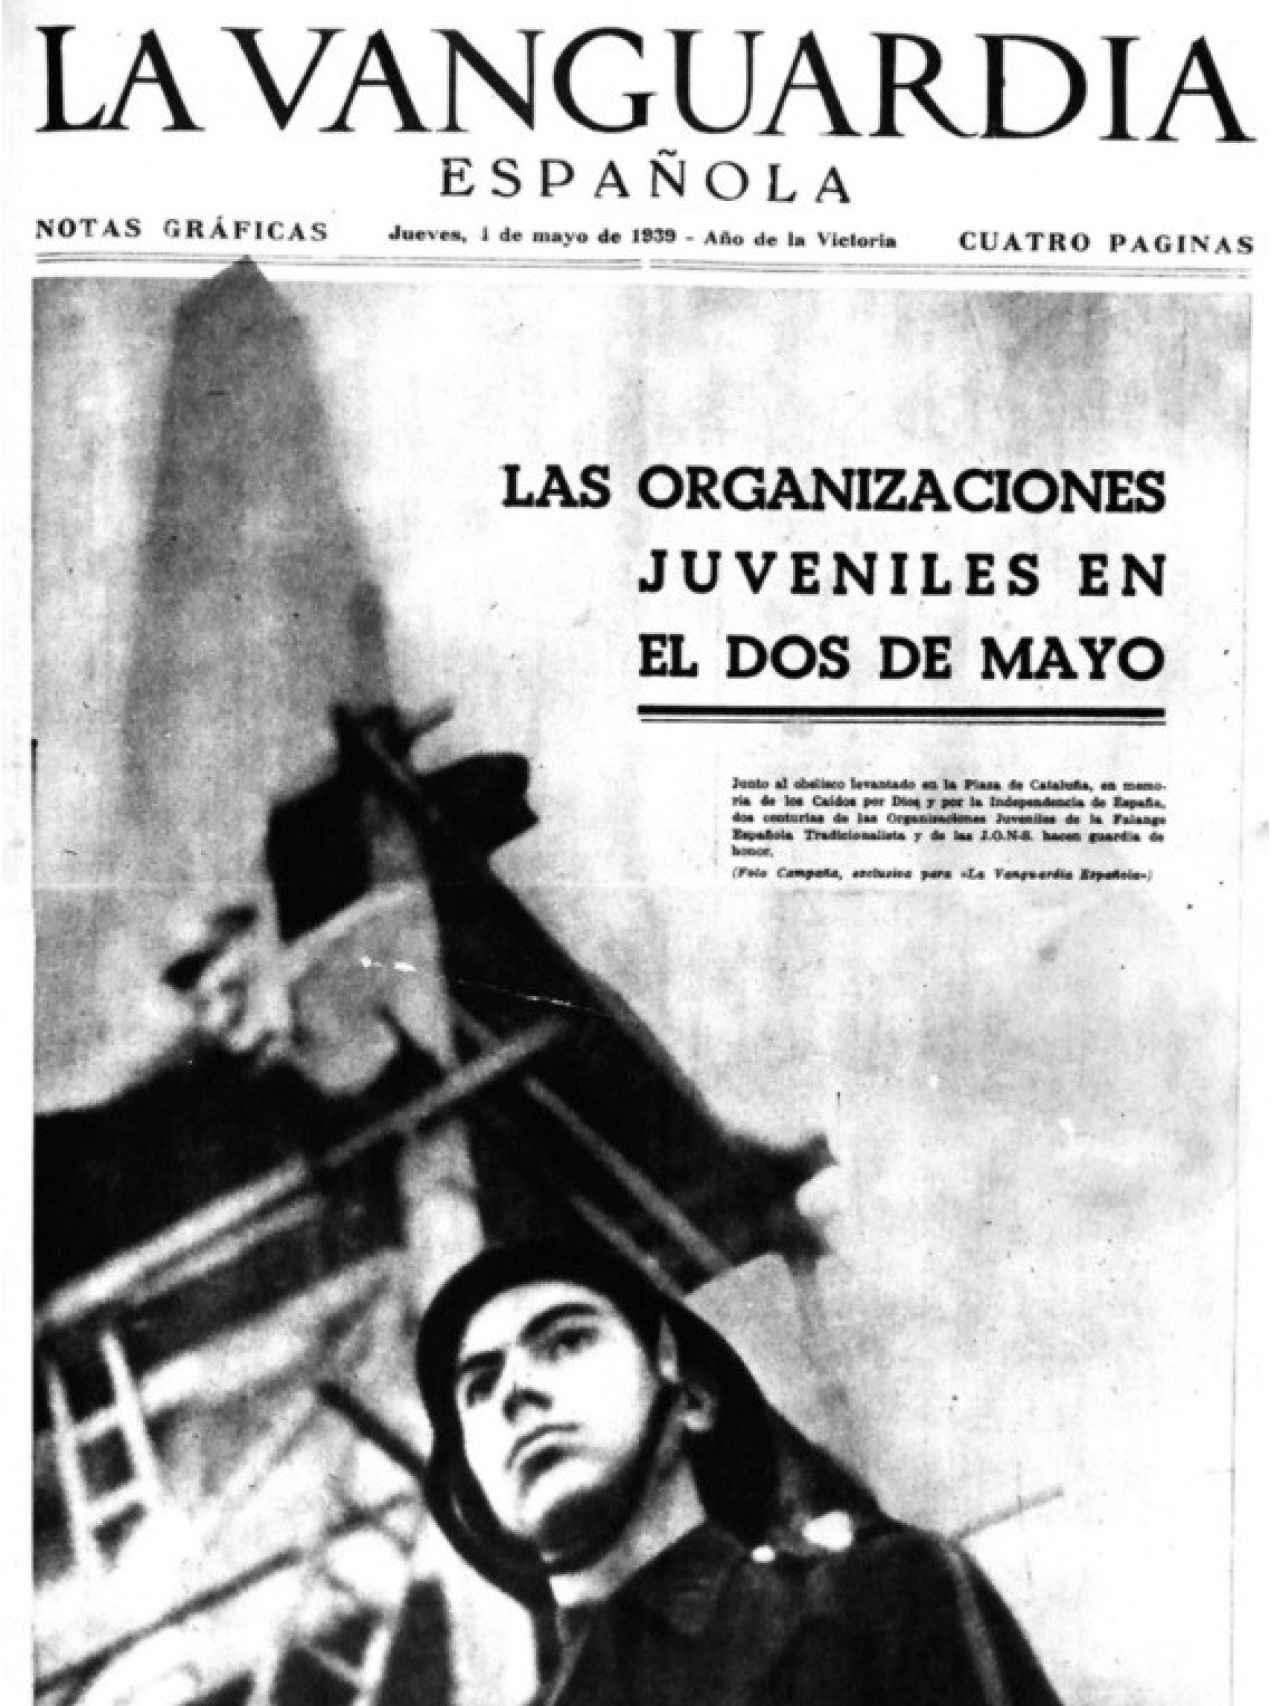 Portada de ‘La Vanguardia’ (1 de mayo de 1939), con el joven Antoni Tàpies ataviado con el uniforme de Falange.